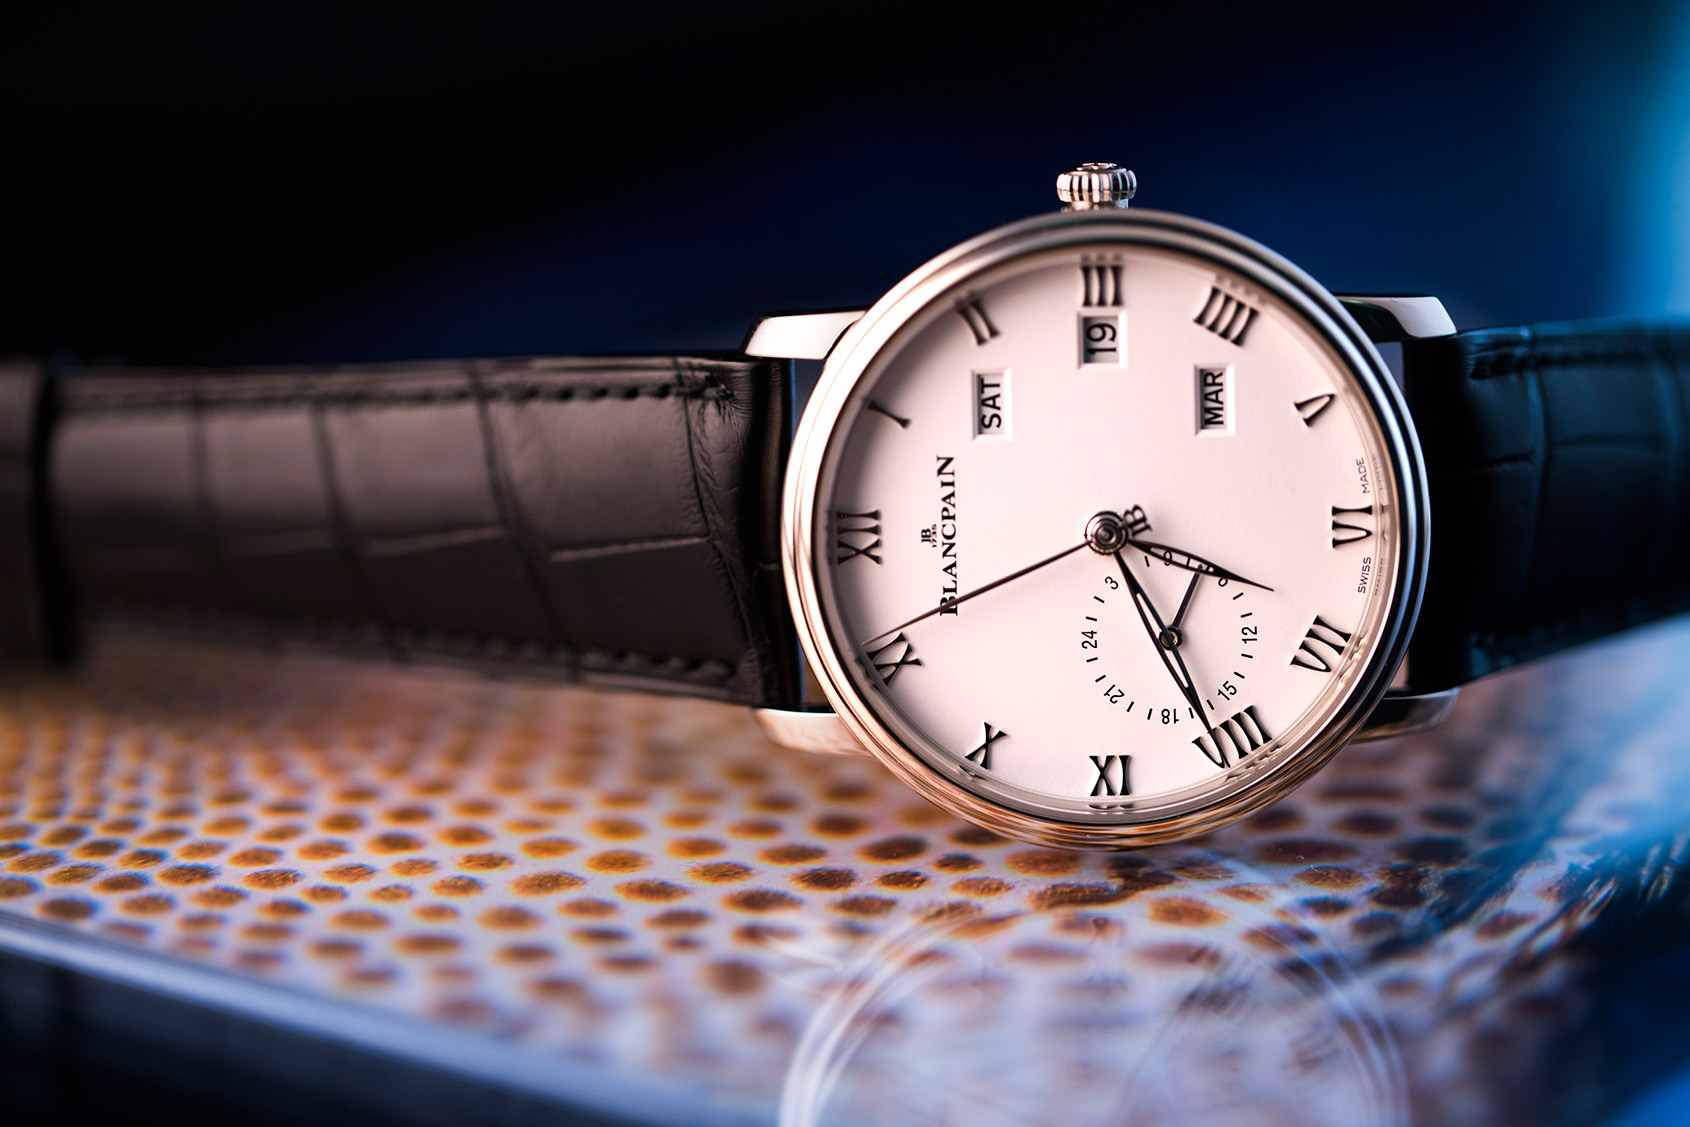 40mm Blancpain Villeret Annual Calendar GMT Replica Watch